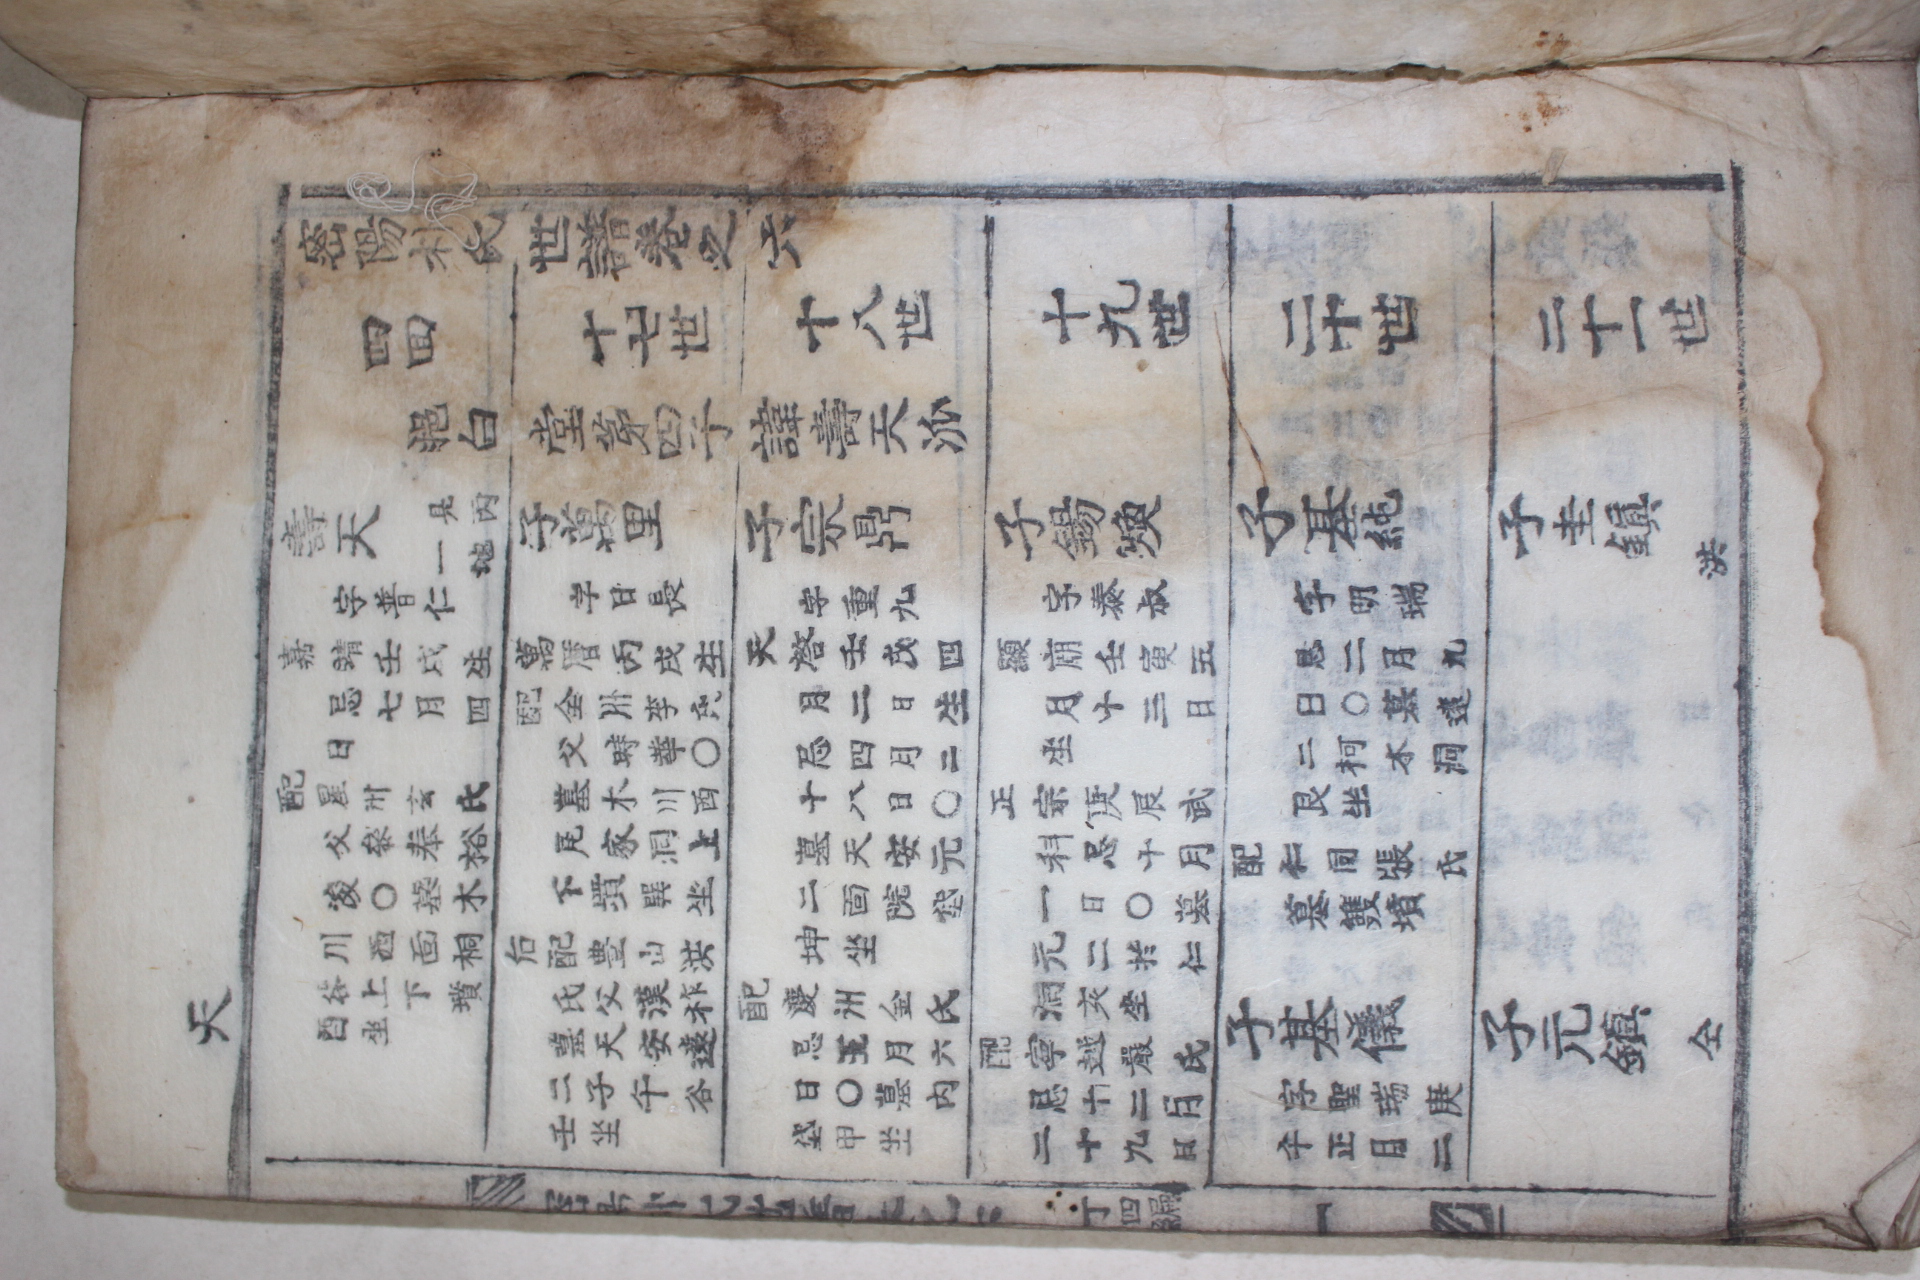 1899년(숭정오기해구례연동) 목활자본 밀양박씨세보(密陽朴氏世譜) 11책